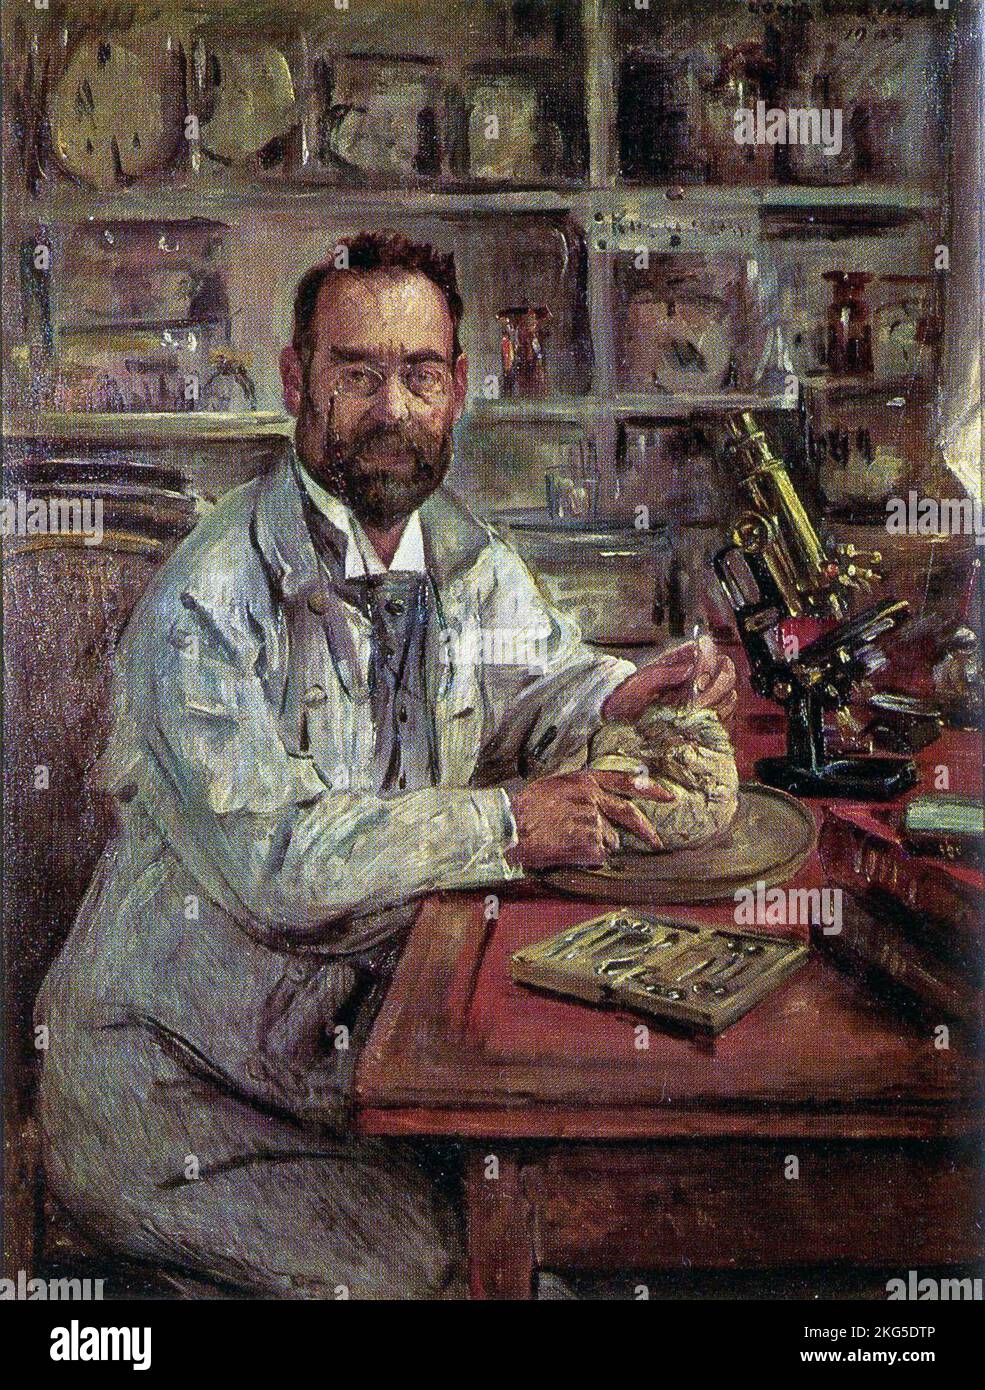 Ludwig Edinger. Portrait de Ludwig Edinger par Lovis Corinthe (1909) Lovis Corinthe, Ludwig Edinger (1855 – 1918) anatomiste et neurologue allemand Banque D'Images